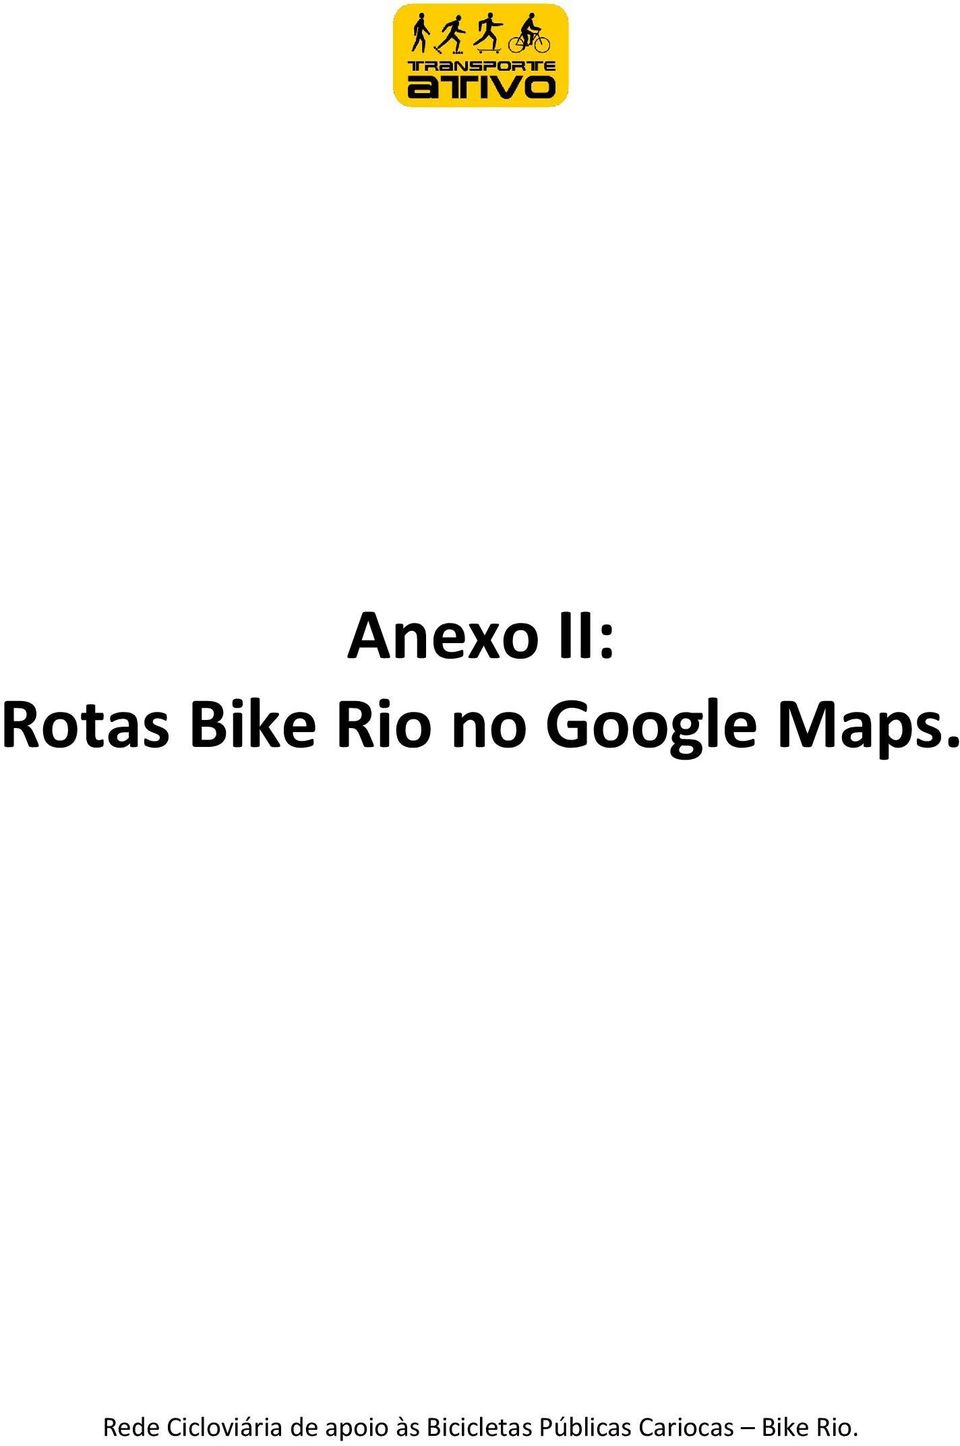 Bike Rio